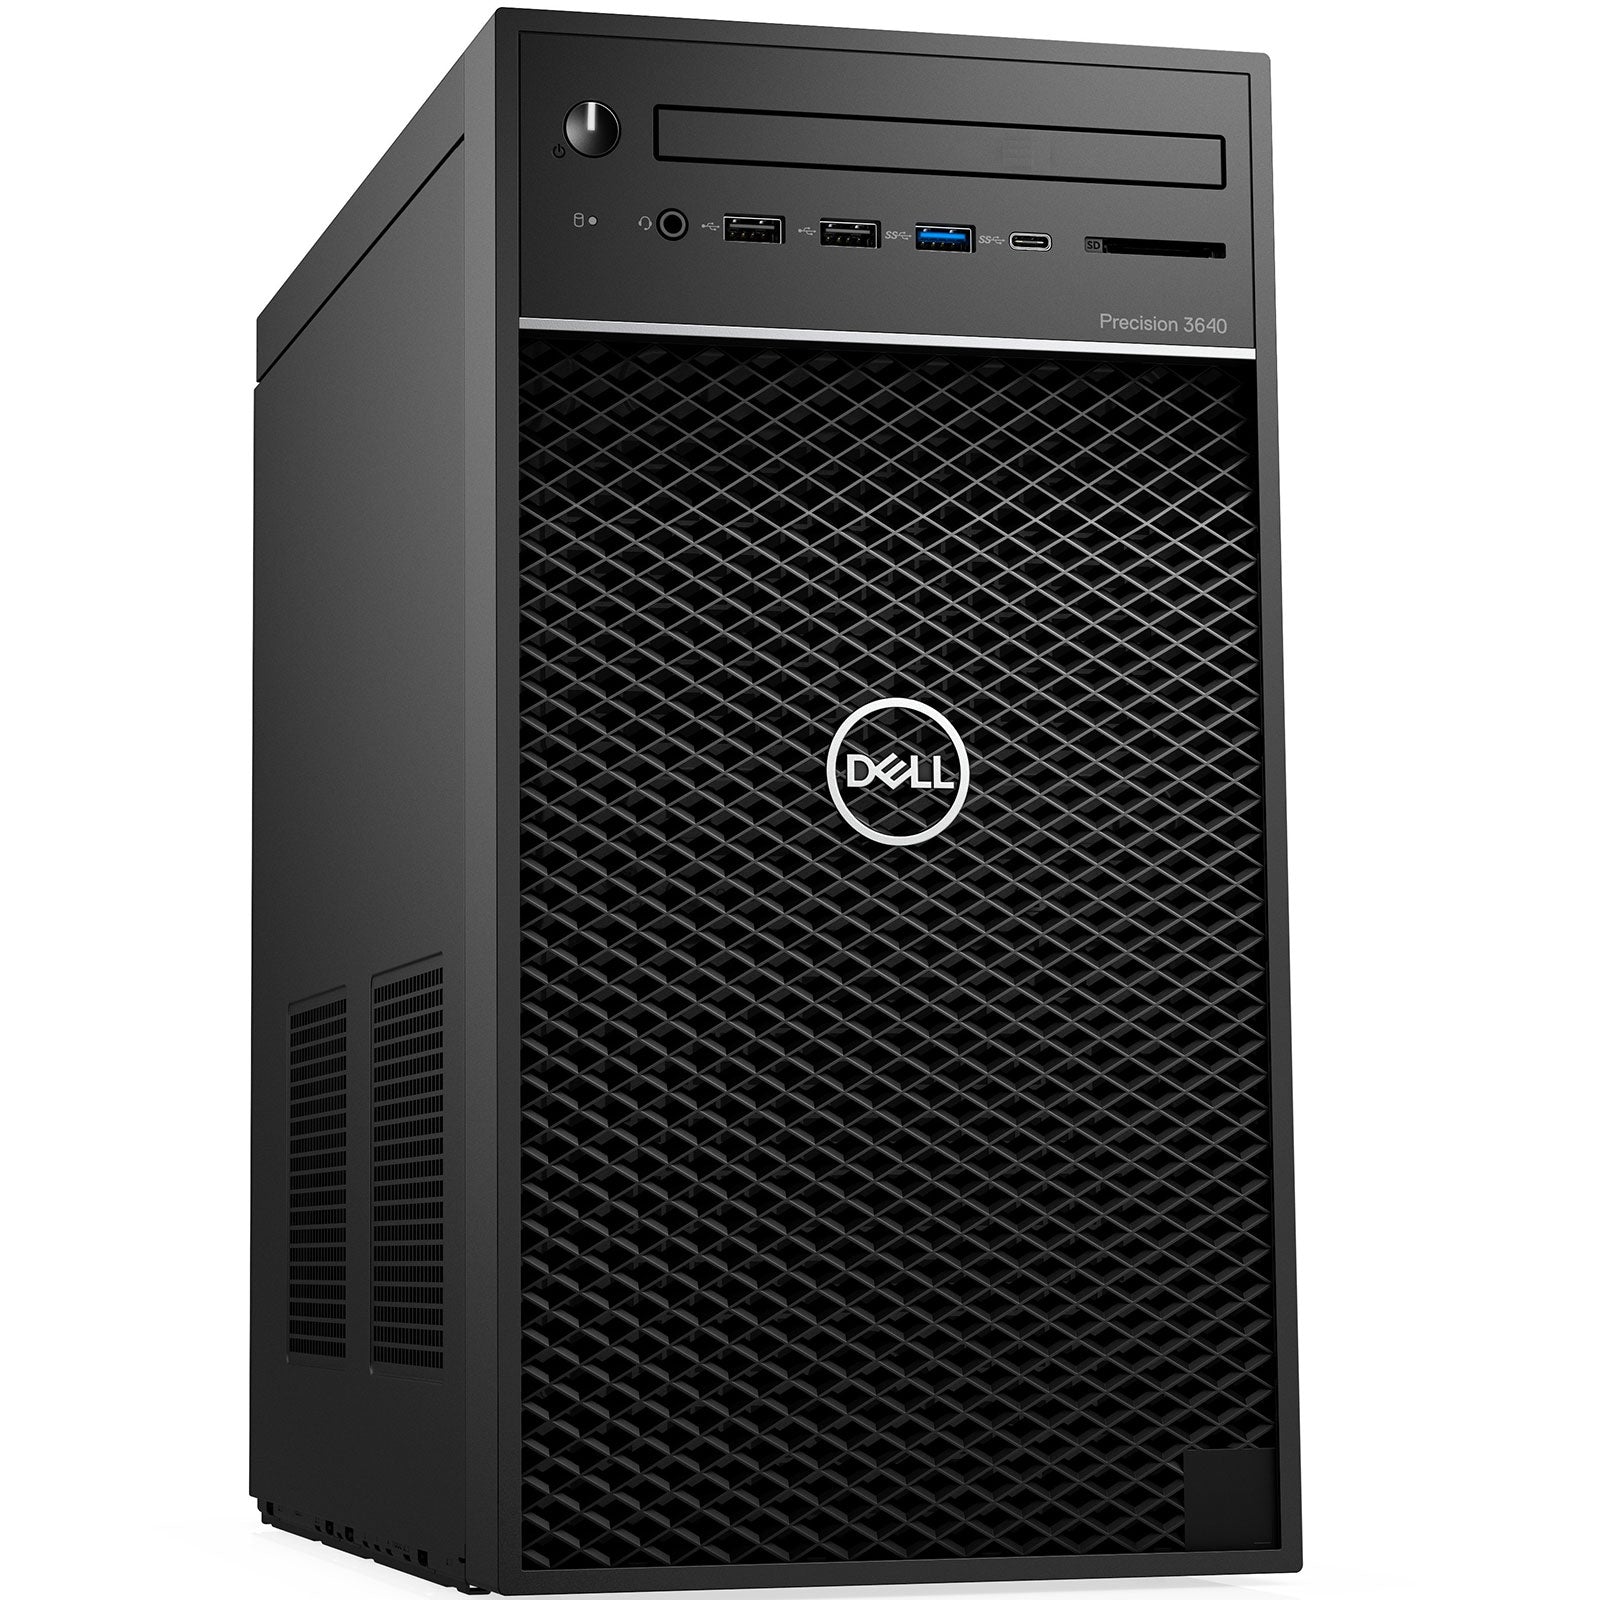 PC Desktop Ricondizionato - Grado A - Dell Precision 3640 Tower Intel i5-10500 Ram 16Gb SSD 1Tb NVMe Freedos (Ricondizionato) - Disponibile in 2-4 giorni lavorativi